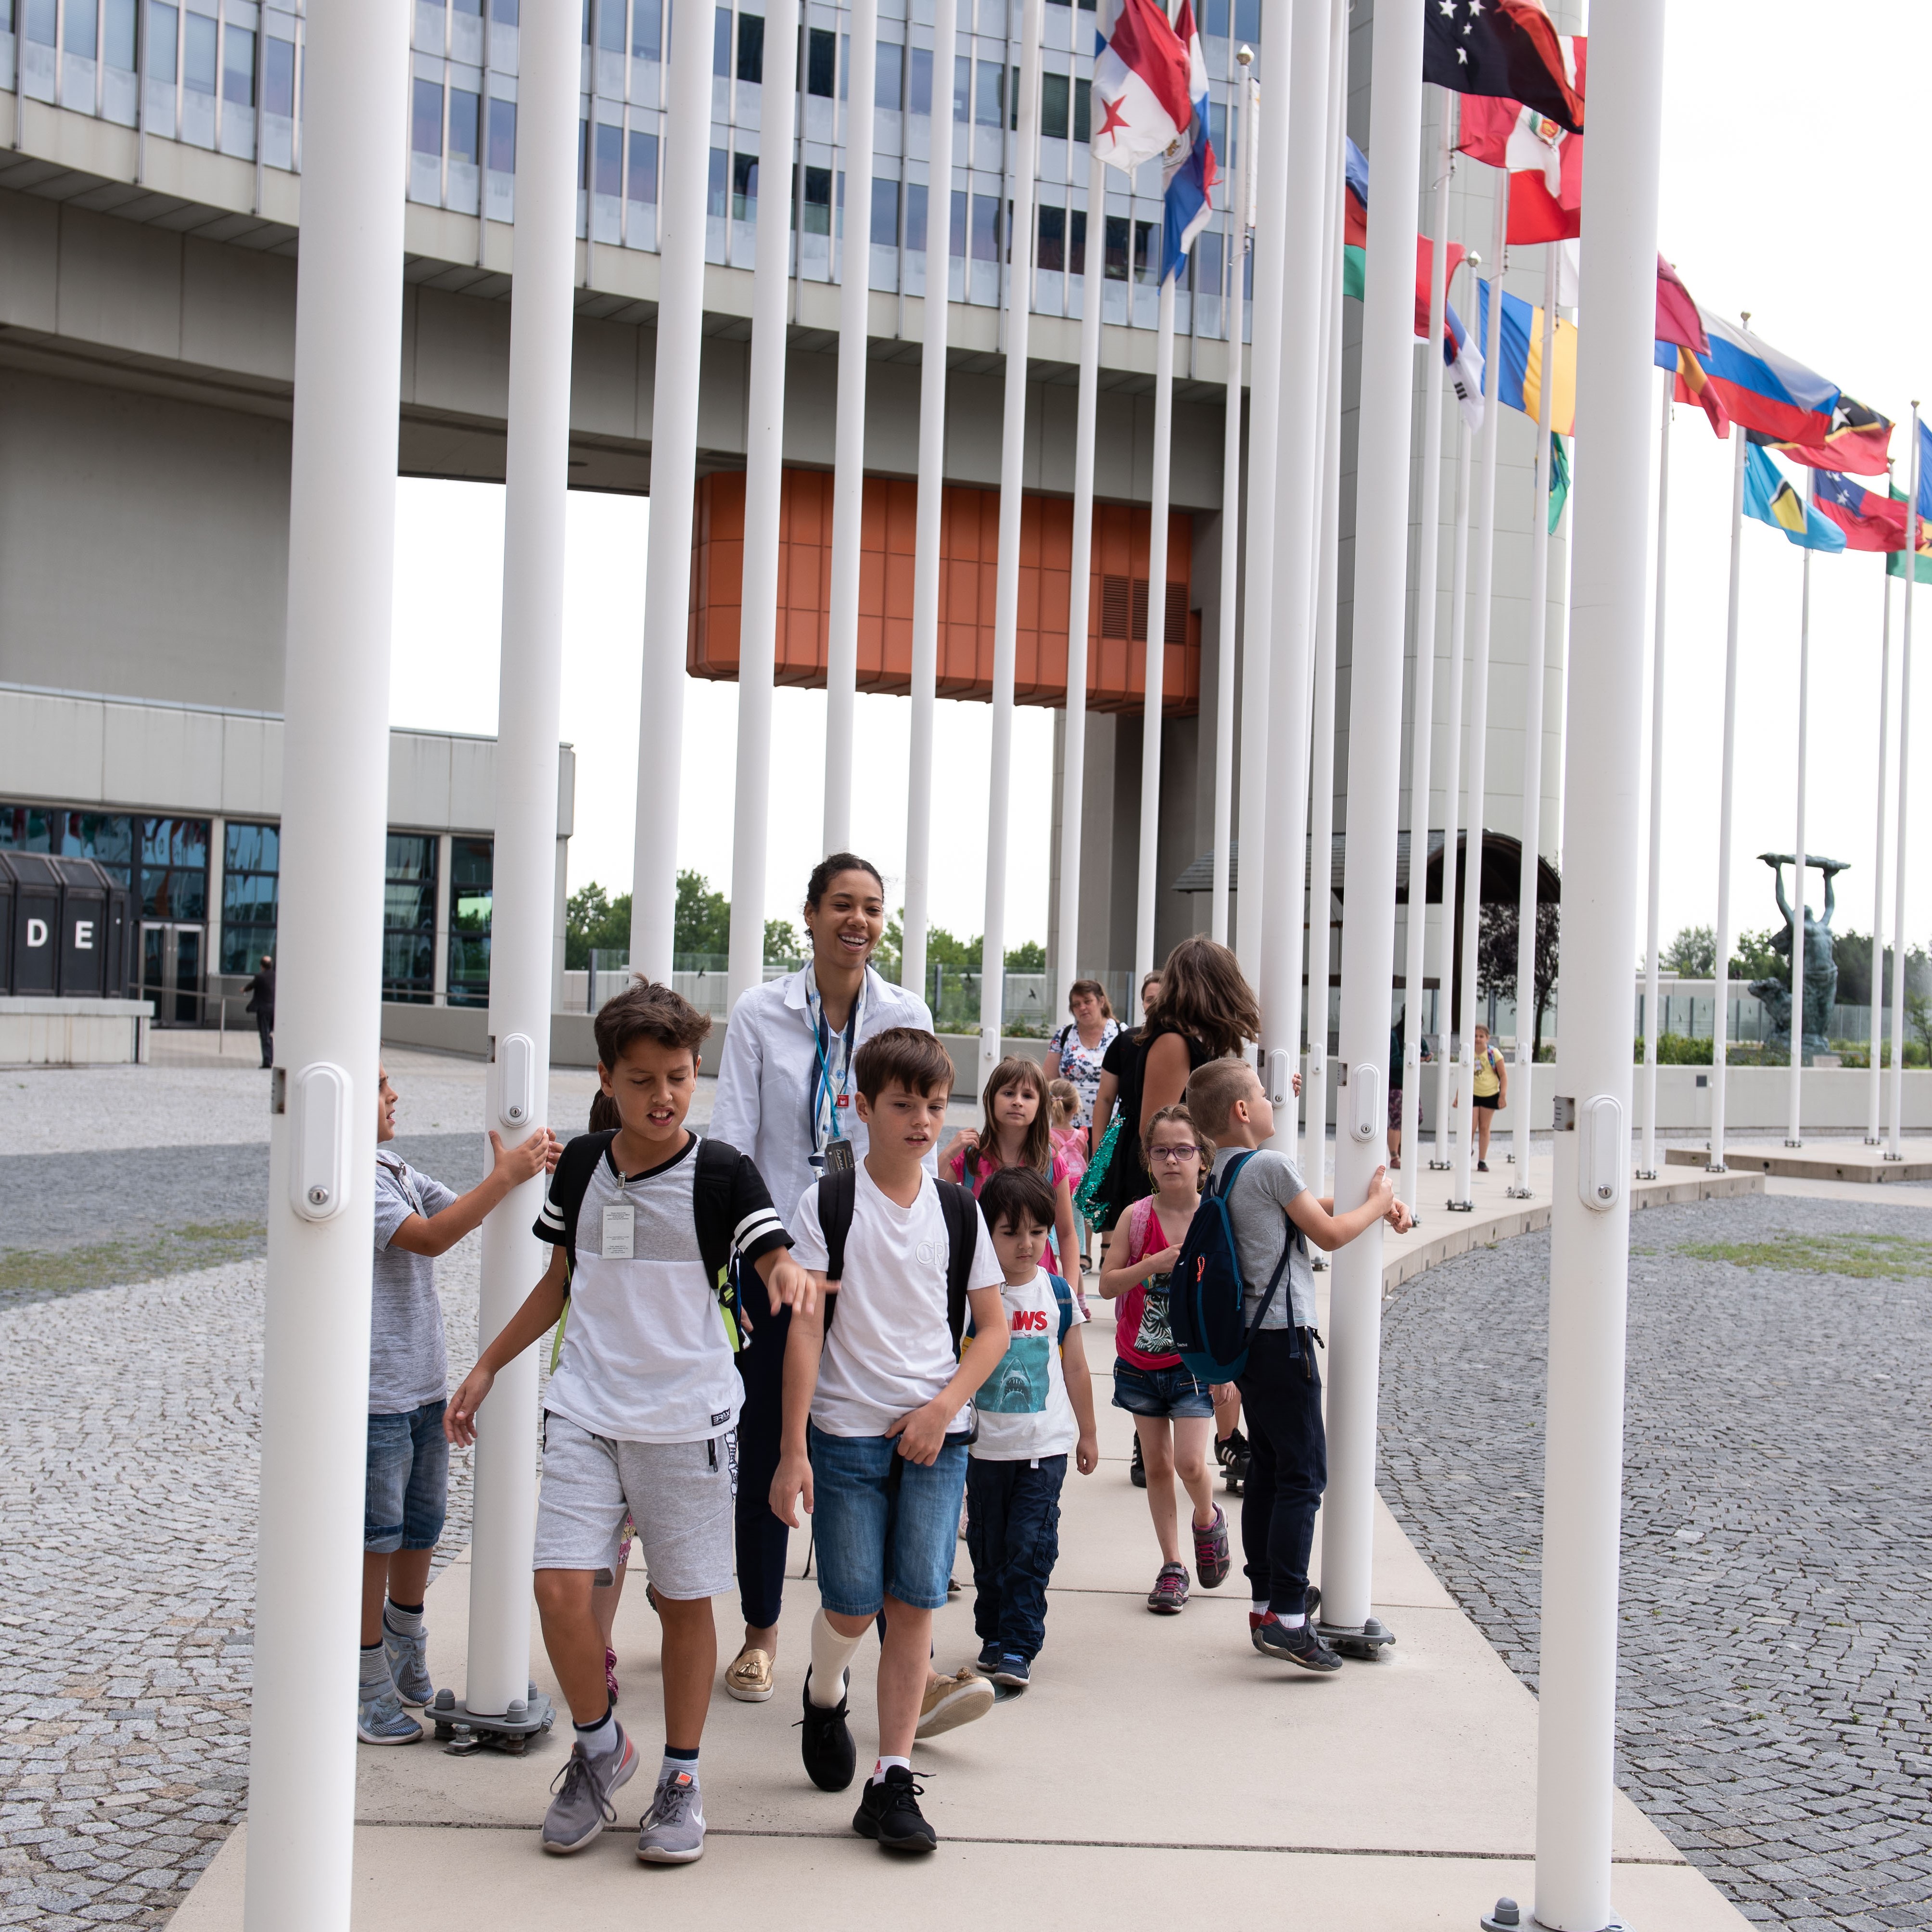 Kinder gehen an den Flaggen der Mitgliedsstaaten entlang